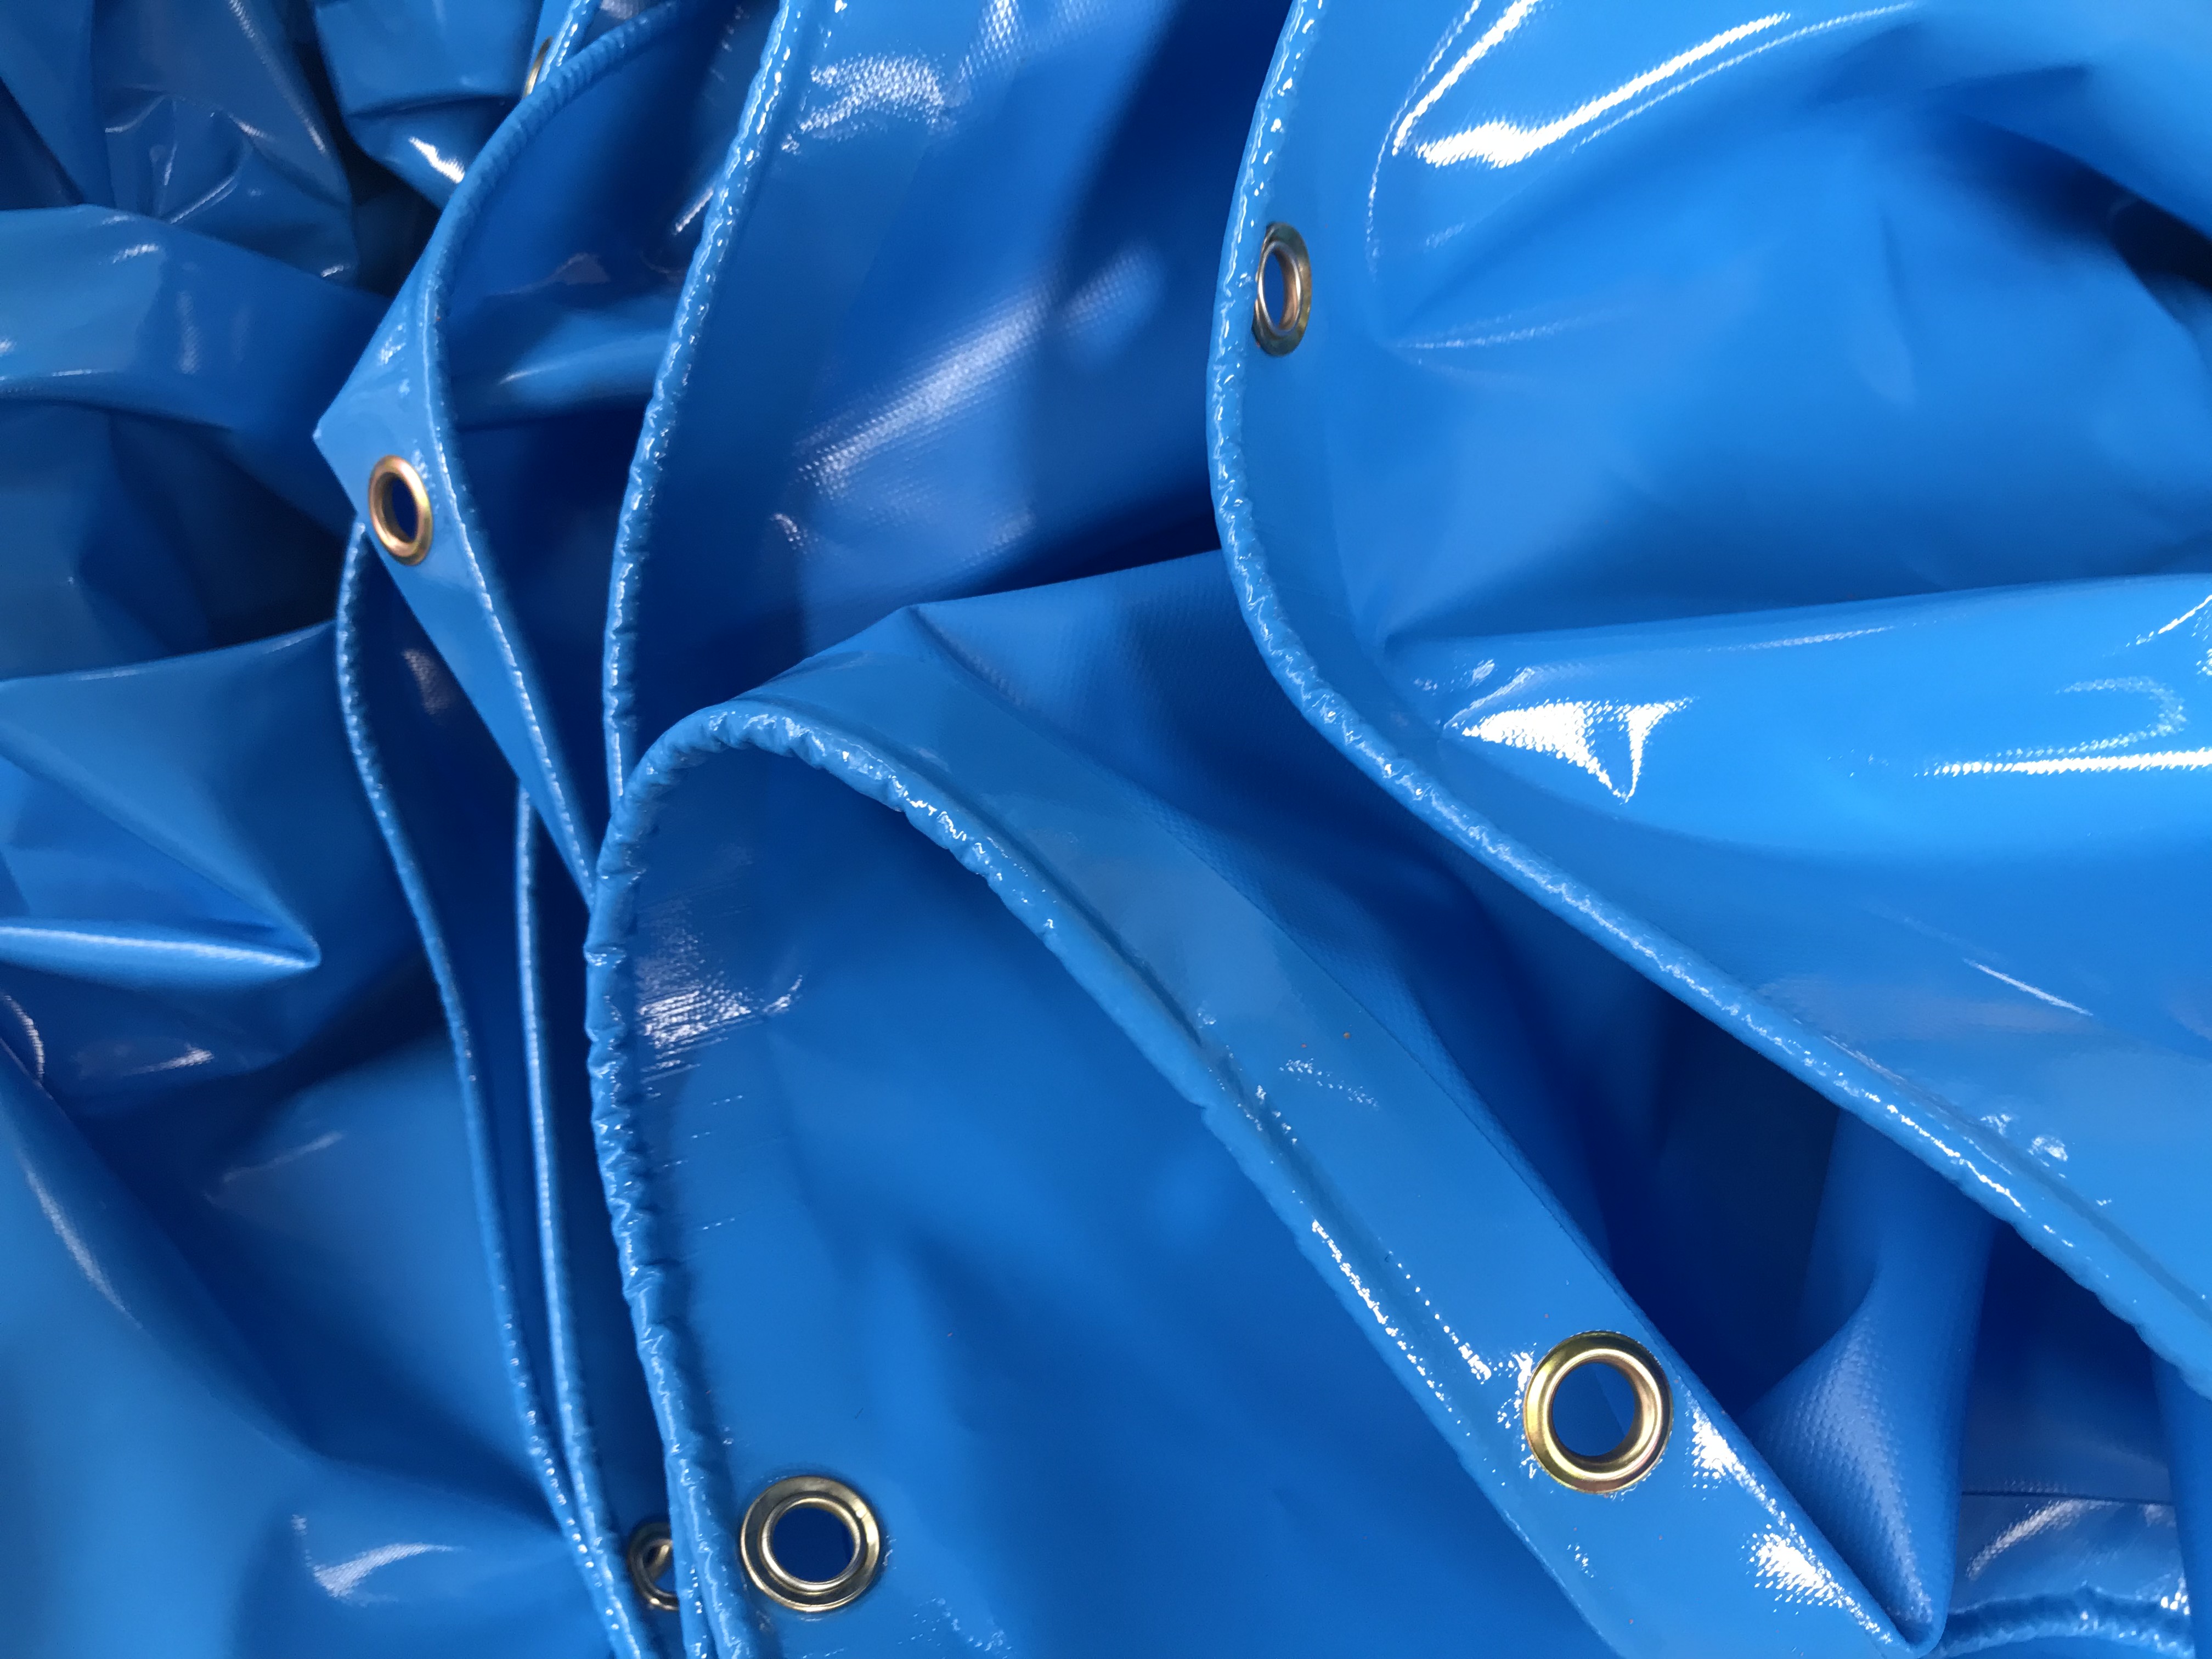 blue PVC coated tarpaulin,cheap tarpaulin,blue tarps,custom tarps,tarp covers